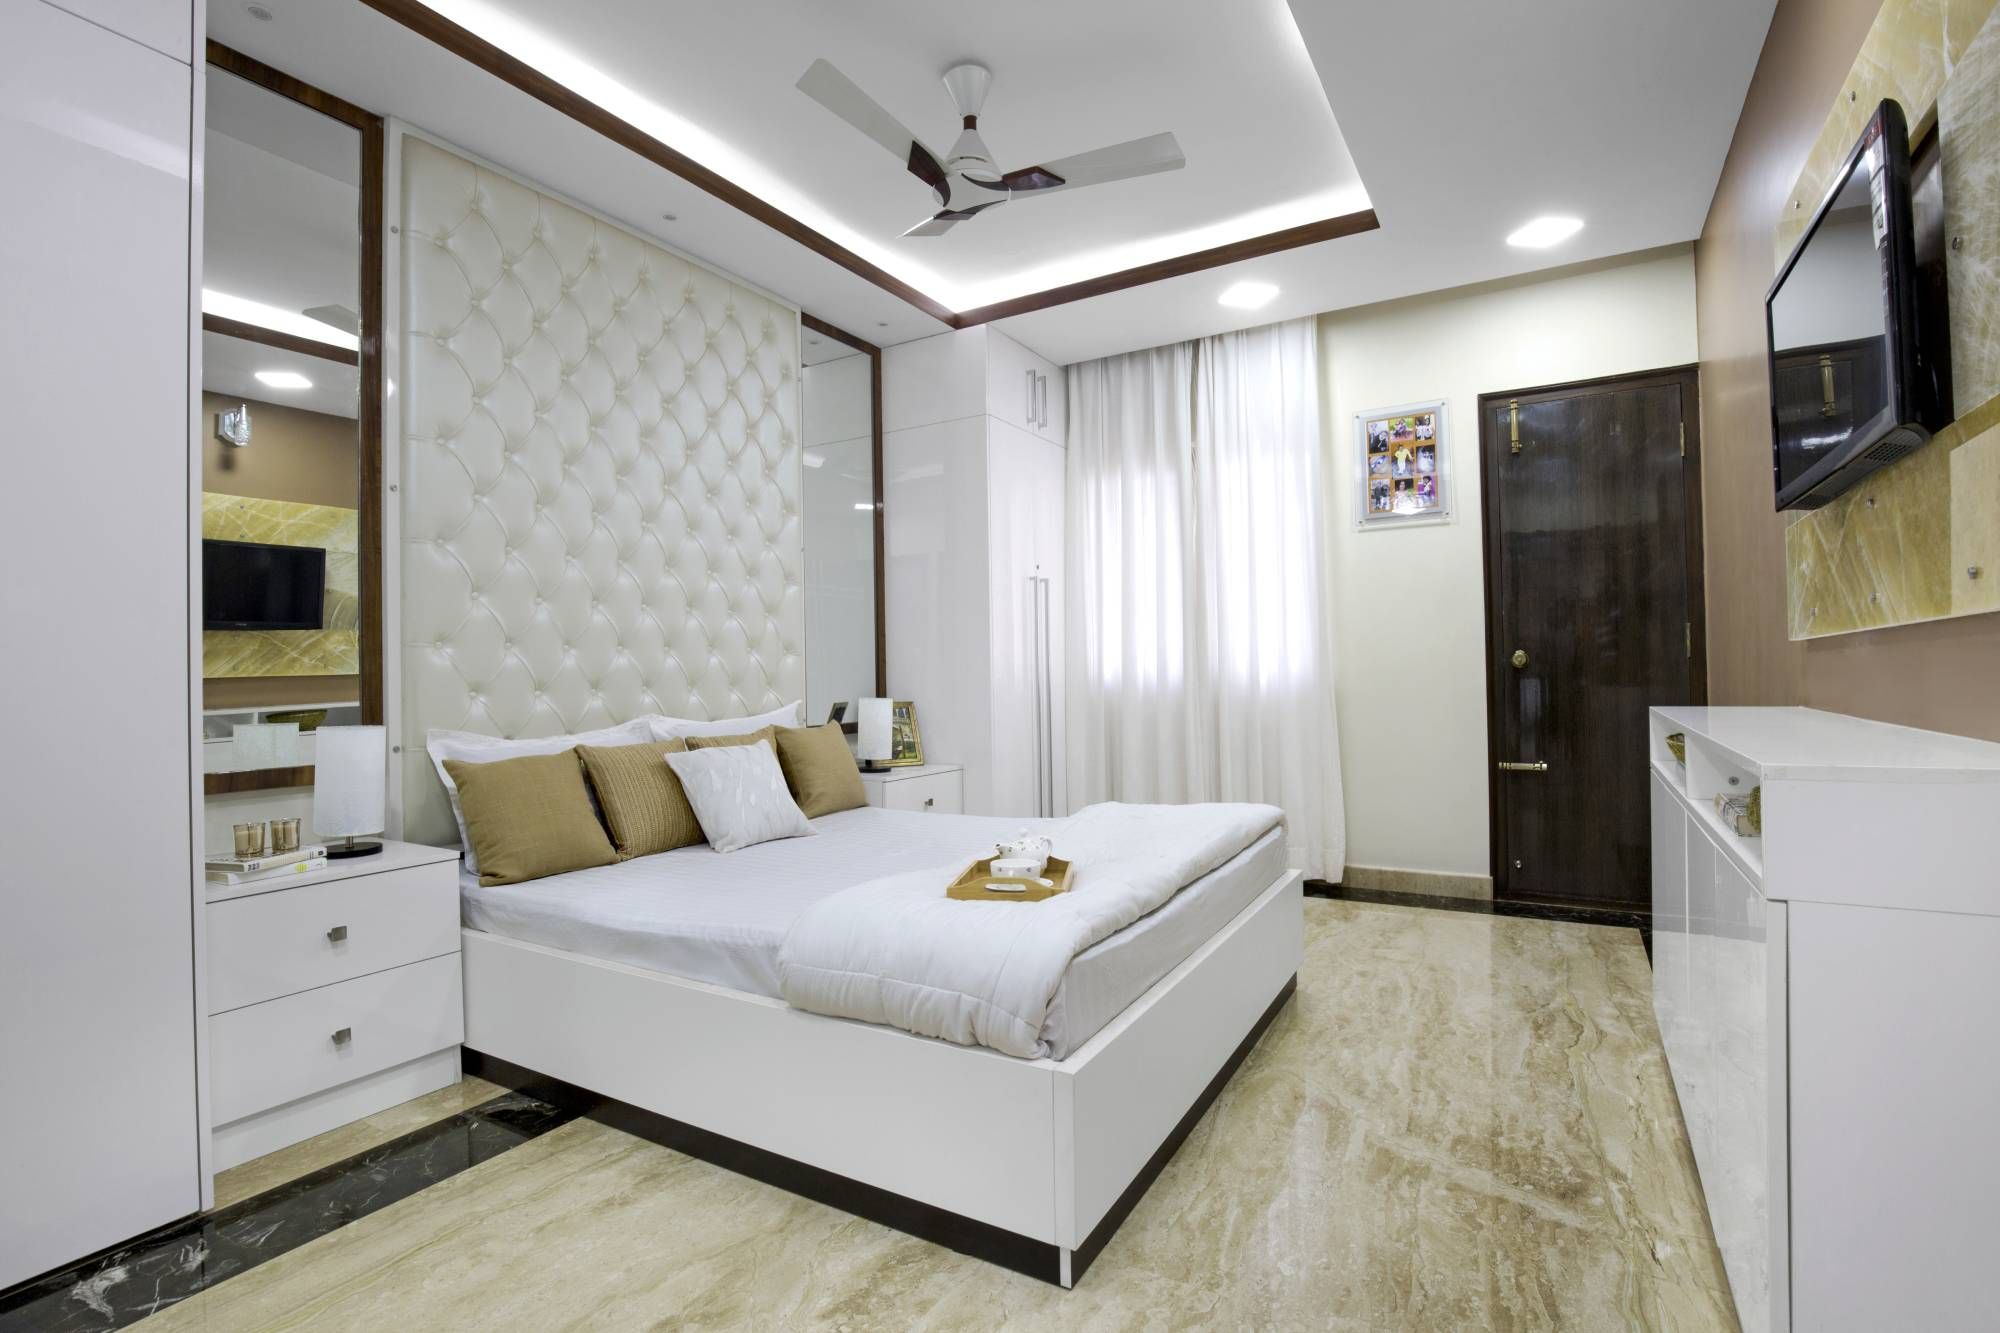 slette Rosefarve Hospital Classic White And Wood POP Design For Bedroom | Livspace